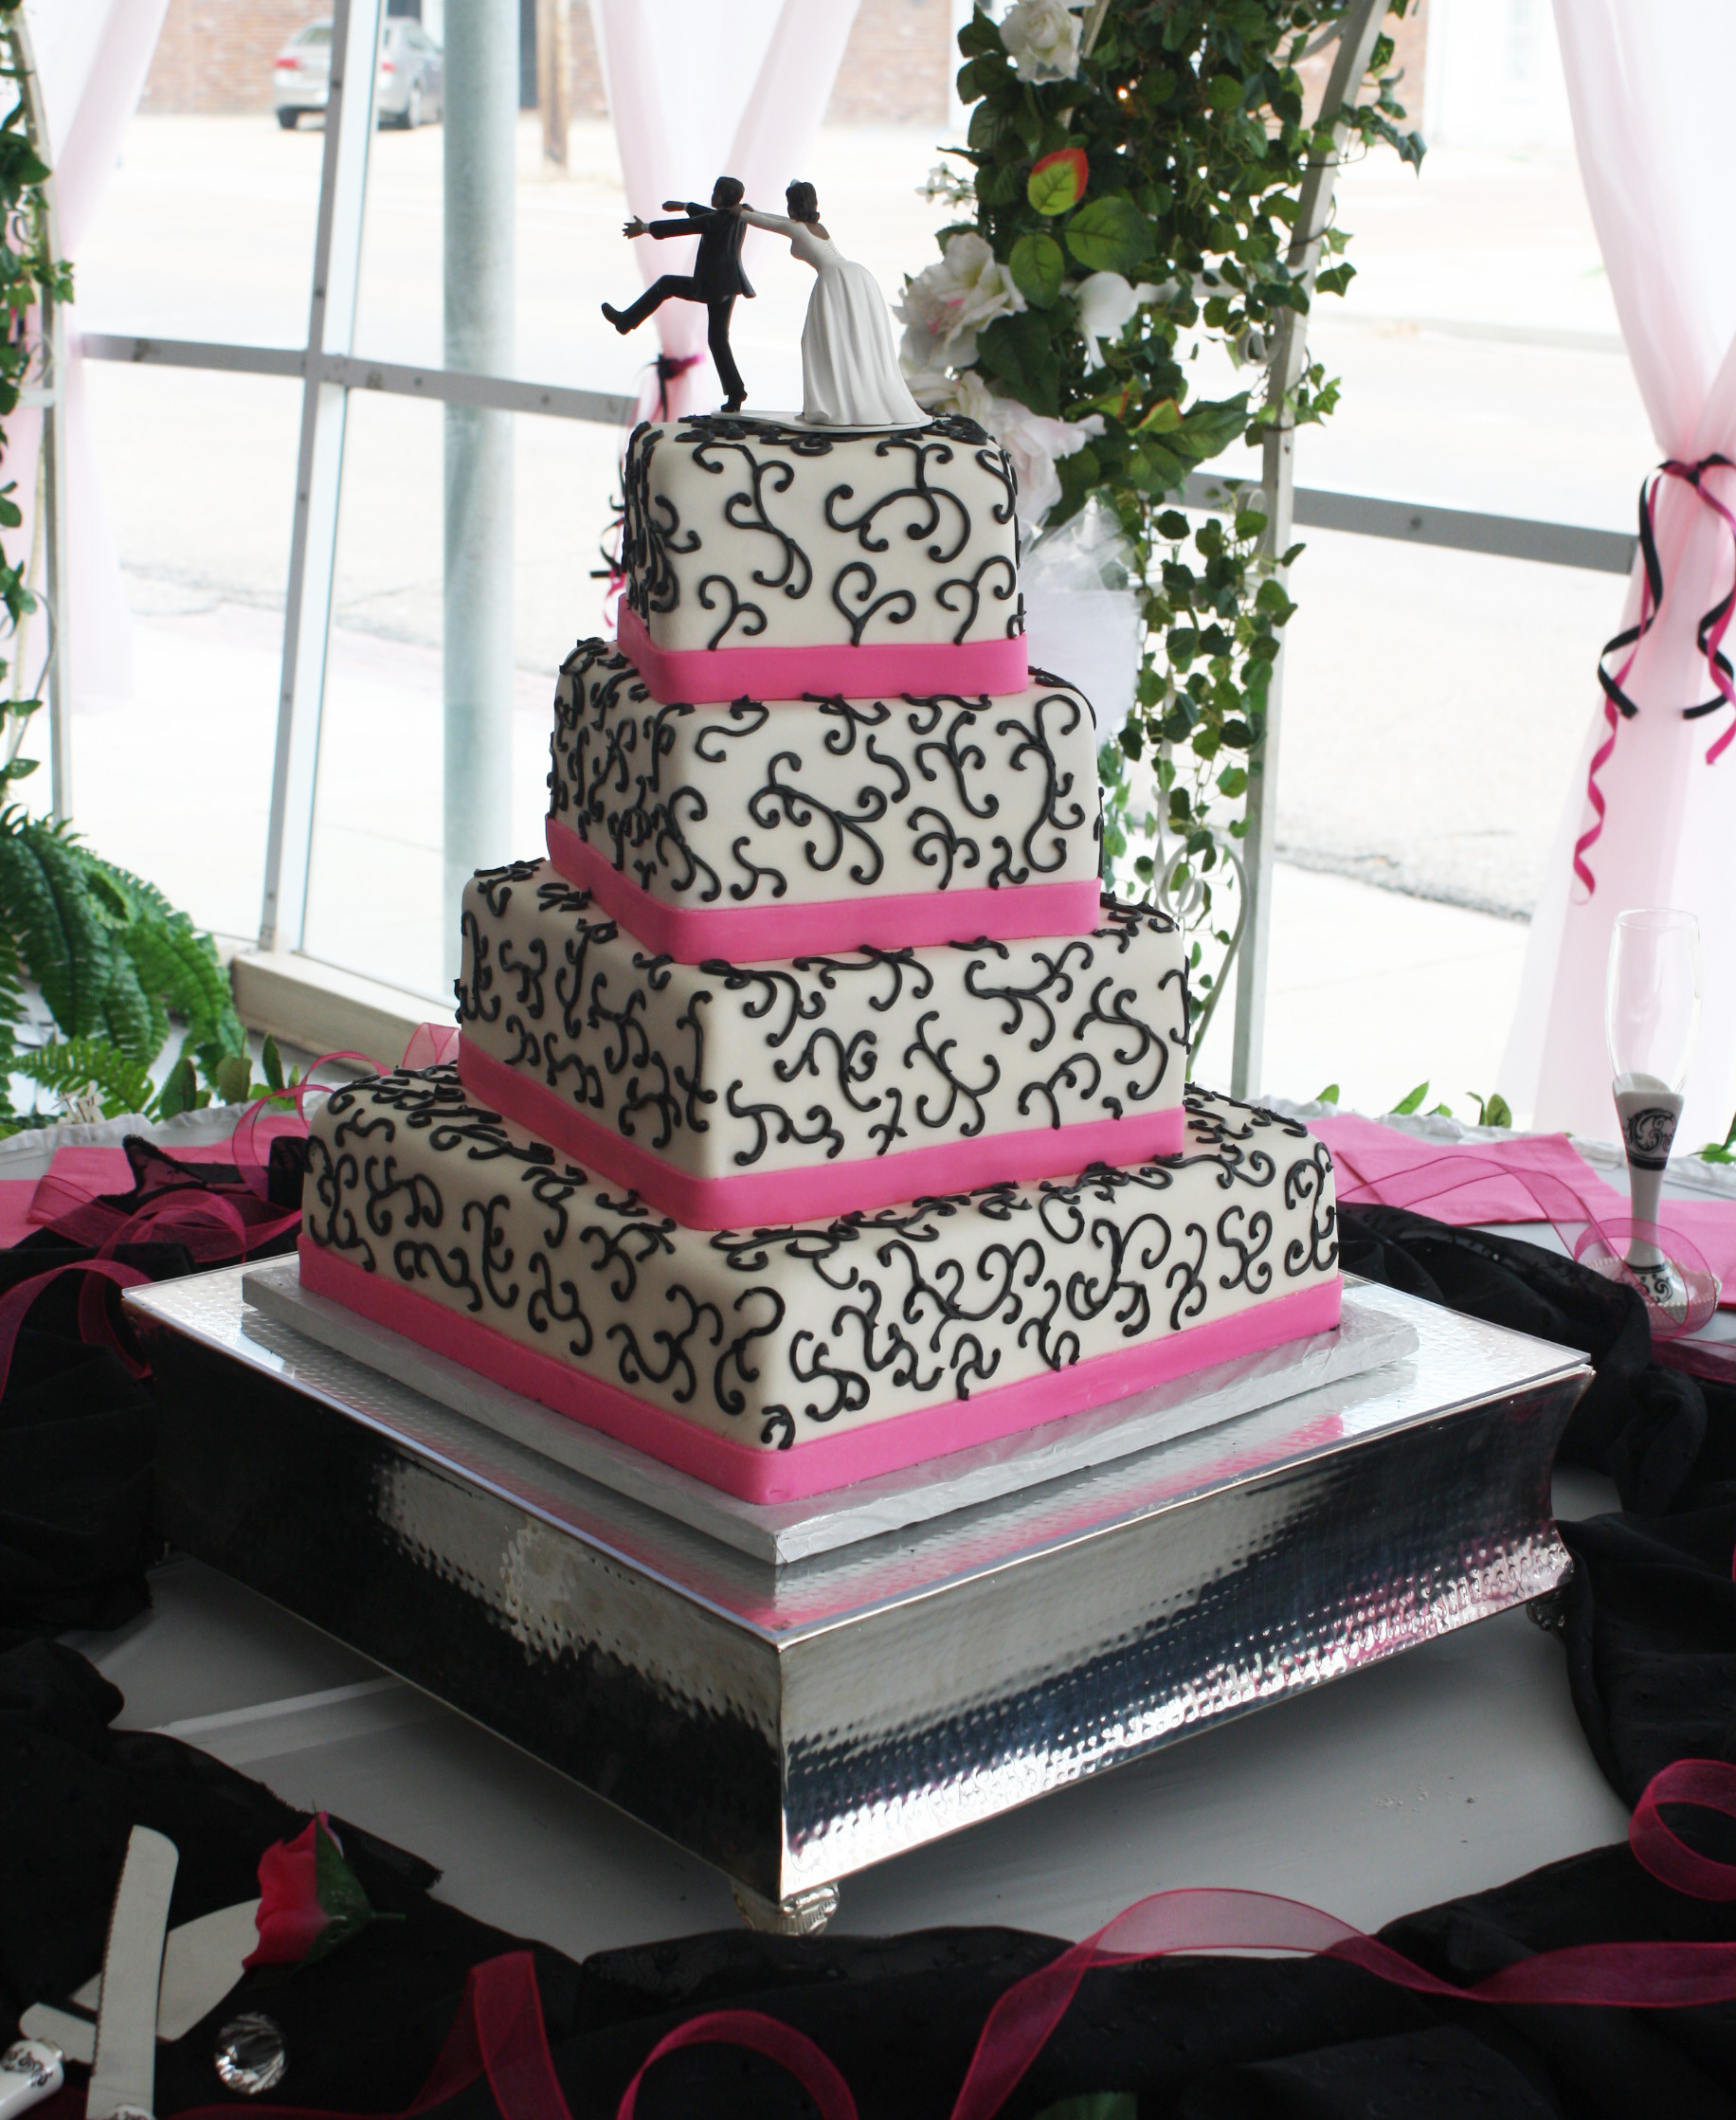 Hot Pink Wedding Cakes
 Hot Pink & Black Wedding Cake